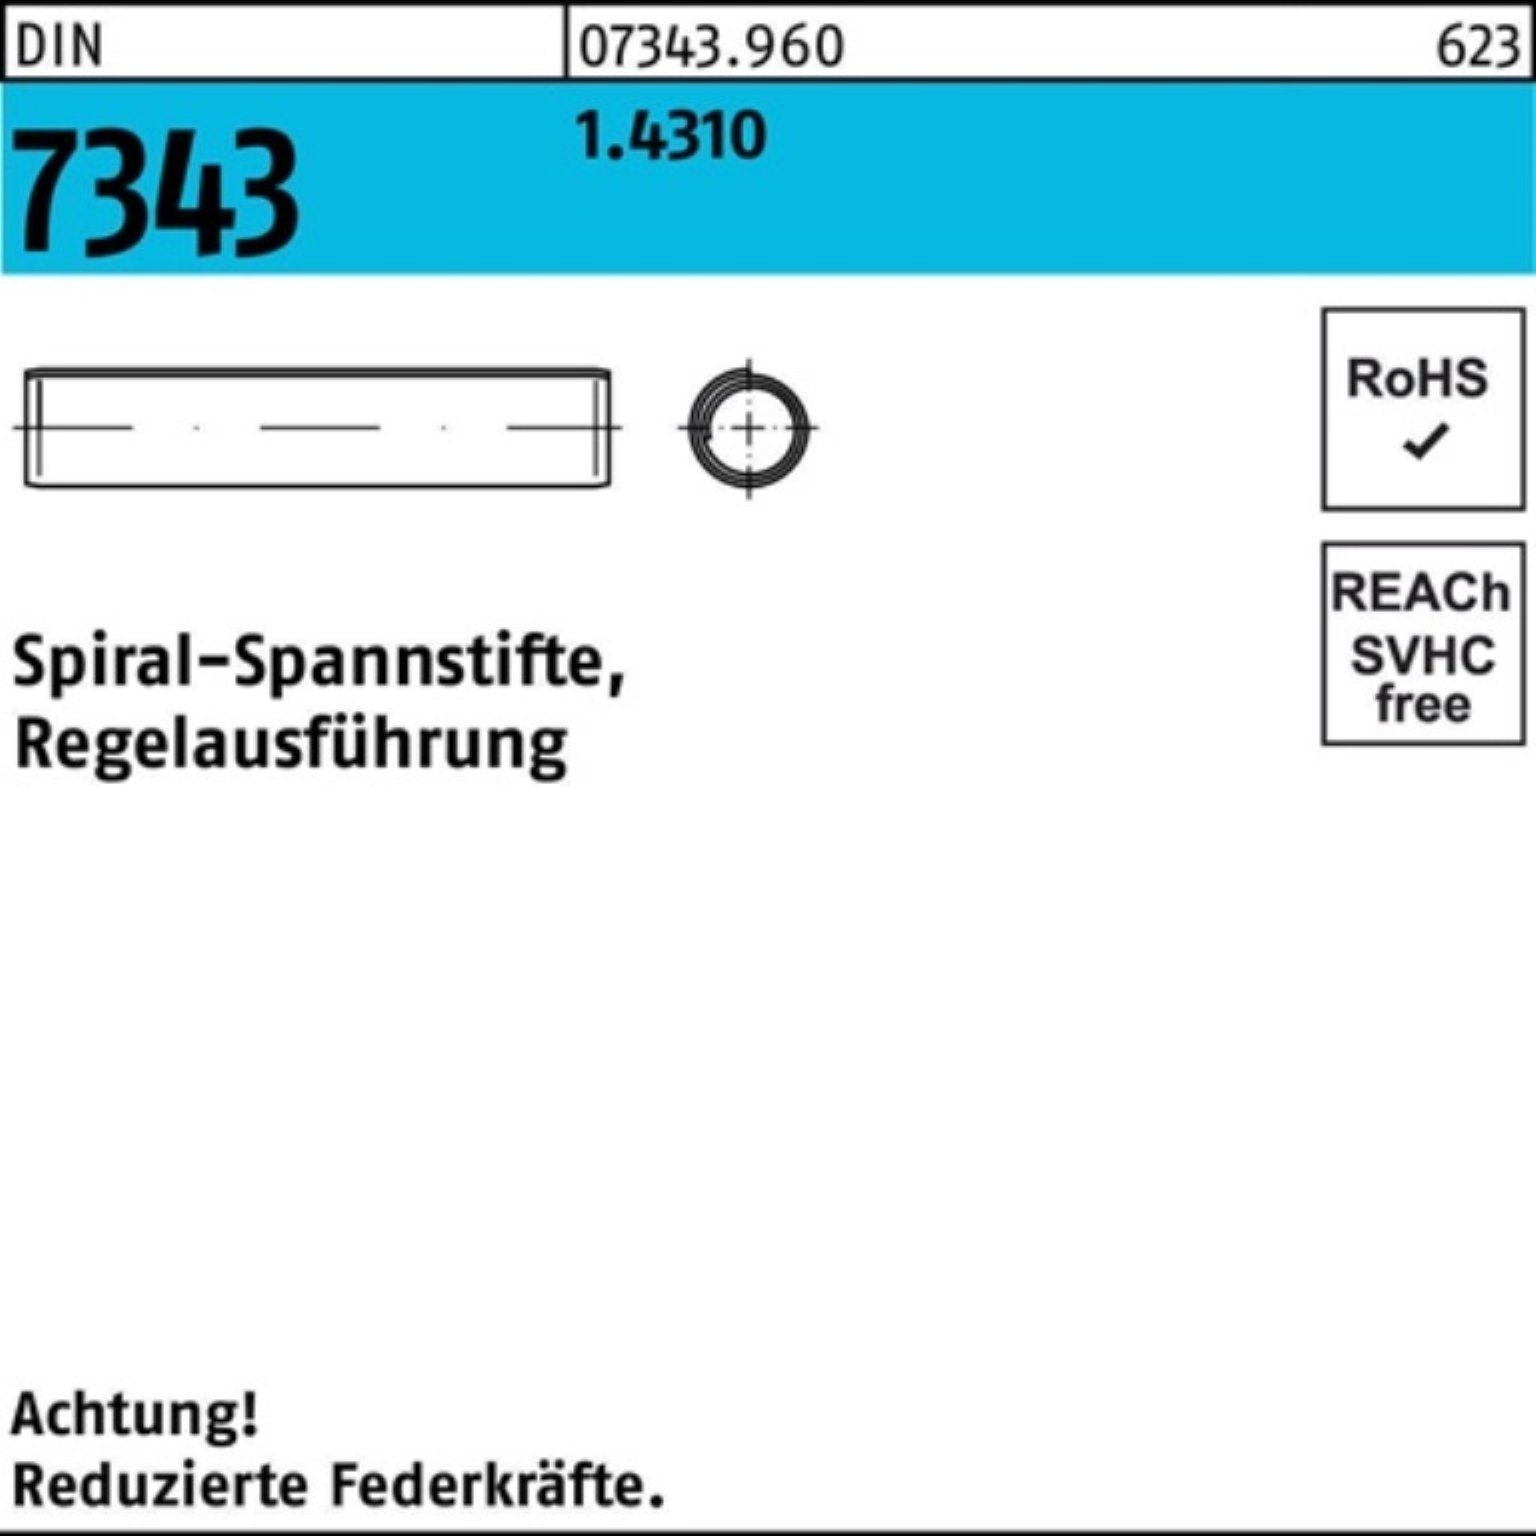 Pack Spannstift 500er 22 7343/ISO DIN 8750 1.4310 5x Regelausf. Reyher Spiralspannstift